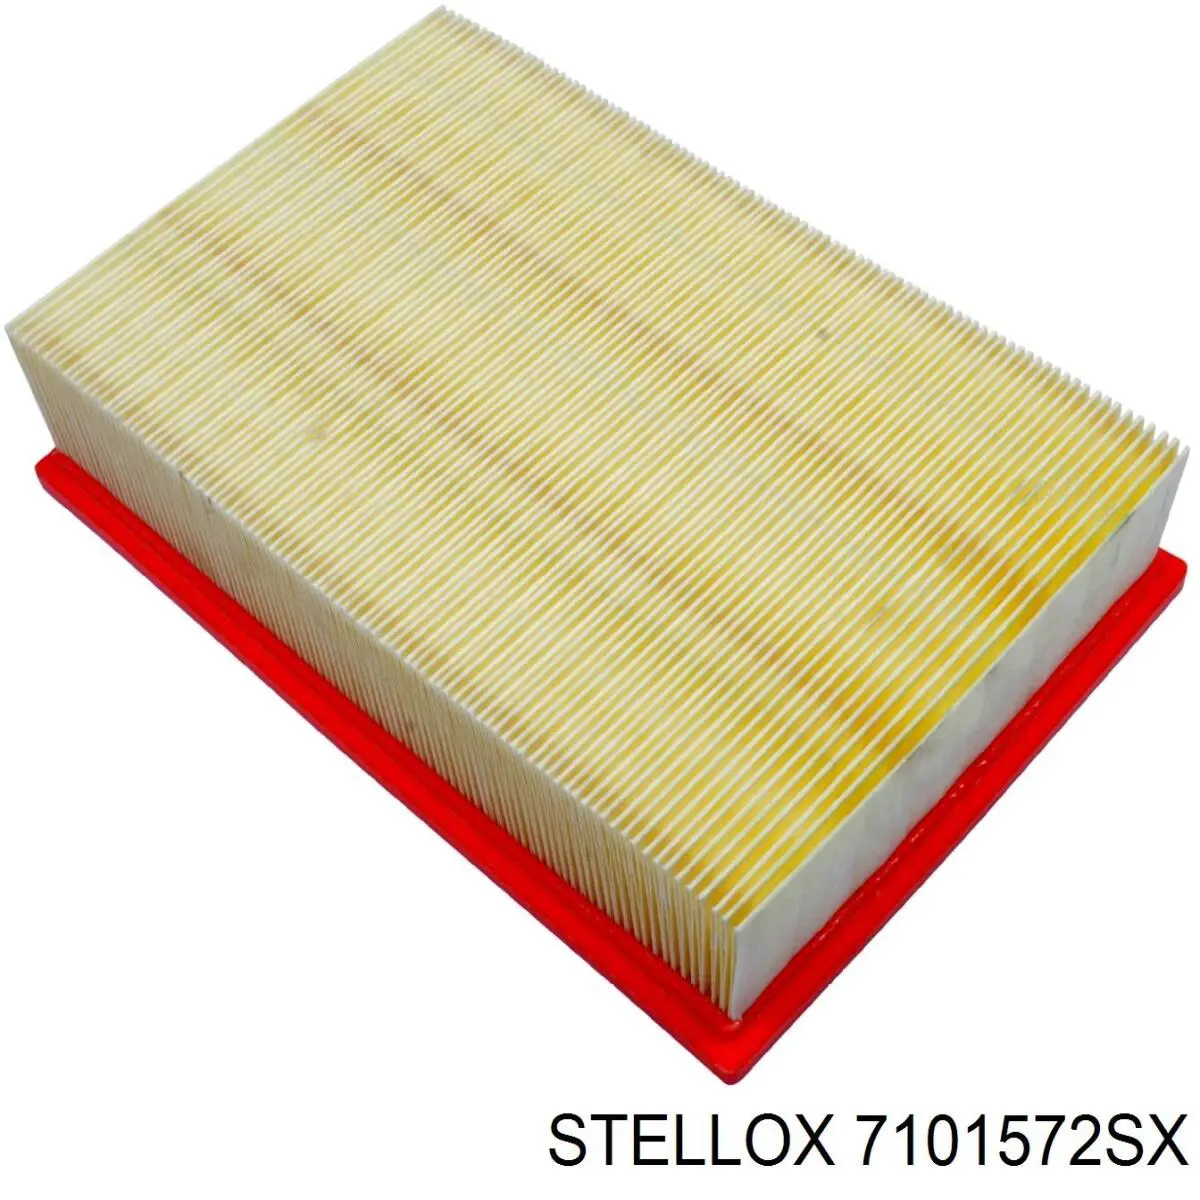 7101572SX Stellox filtro de aire